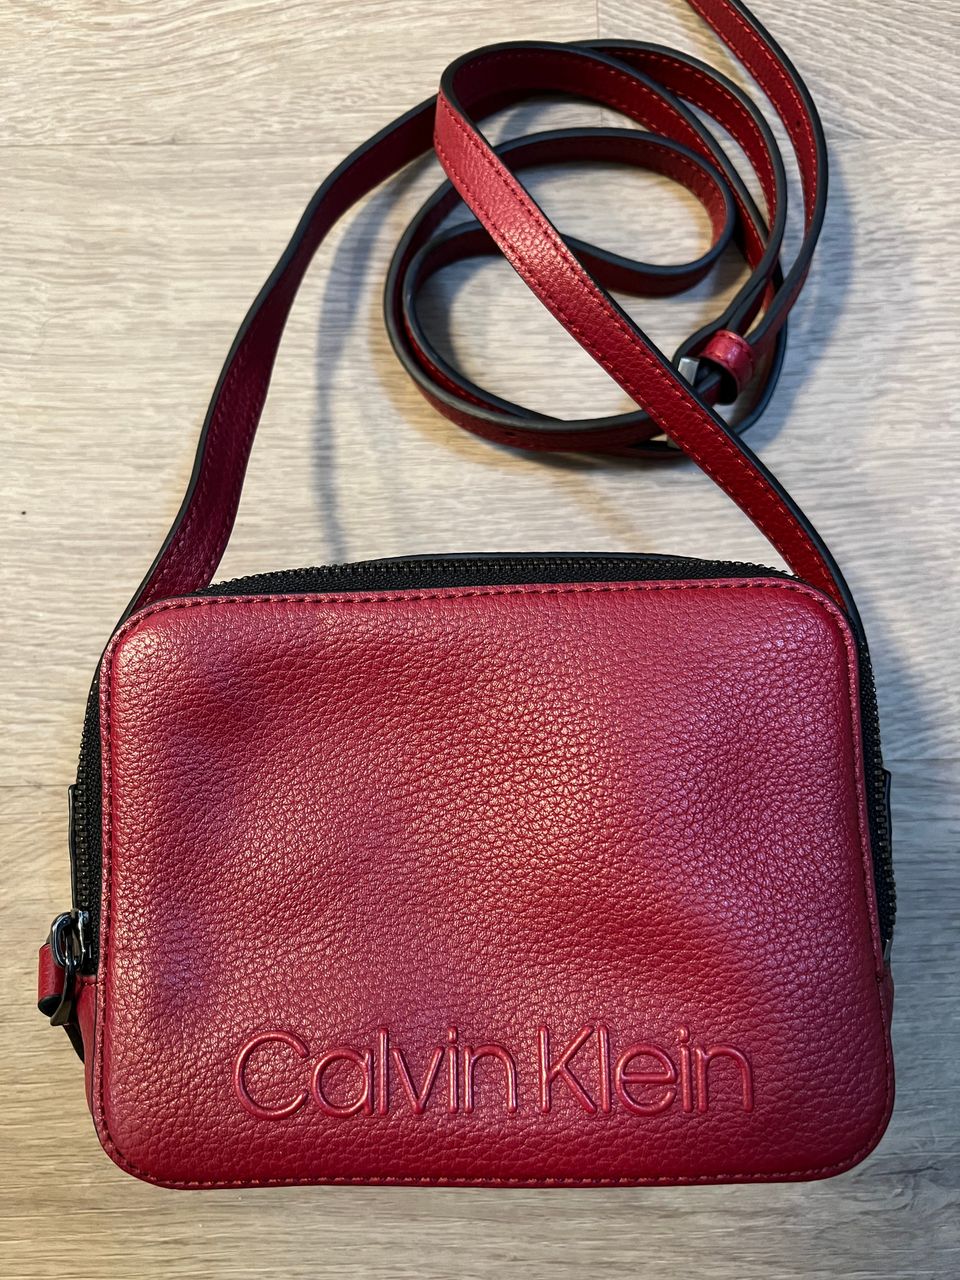 Calvin Kleinin laukku